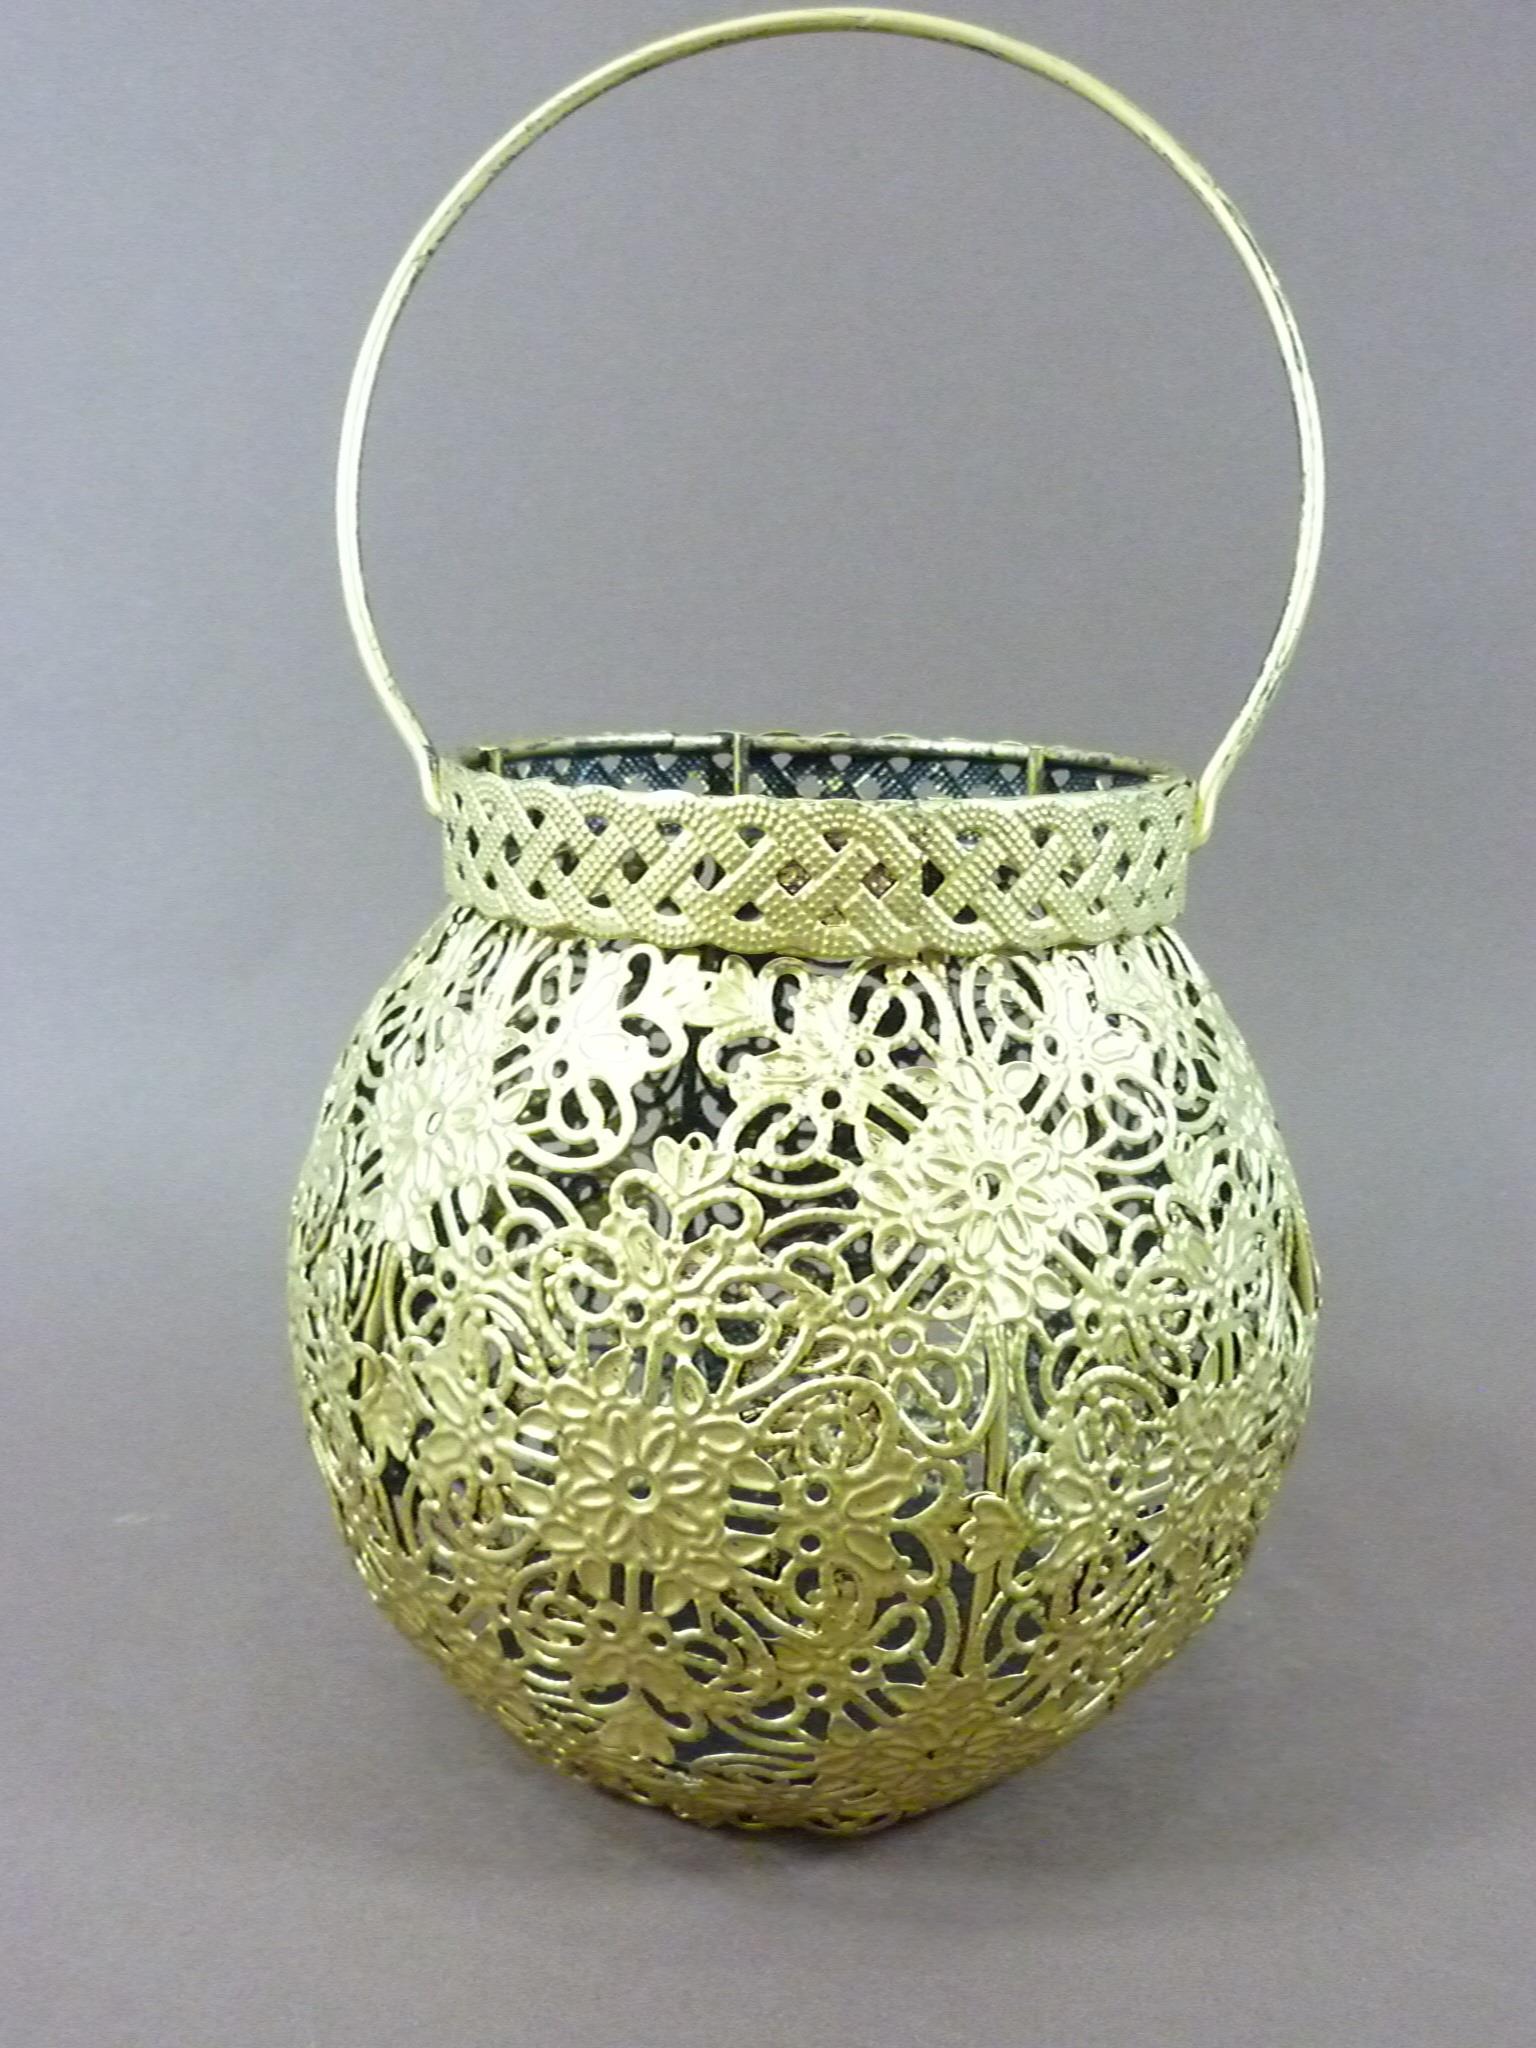 Orientalisches Windlicht Metall mit Bügel Laterne goldfarbig Teelichthalter